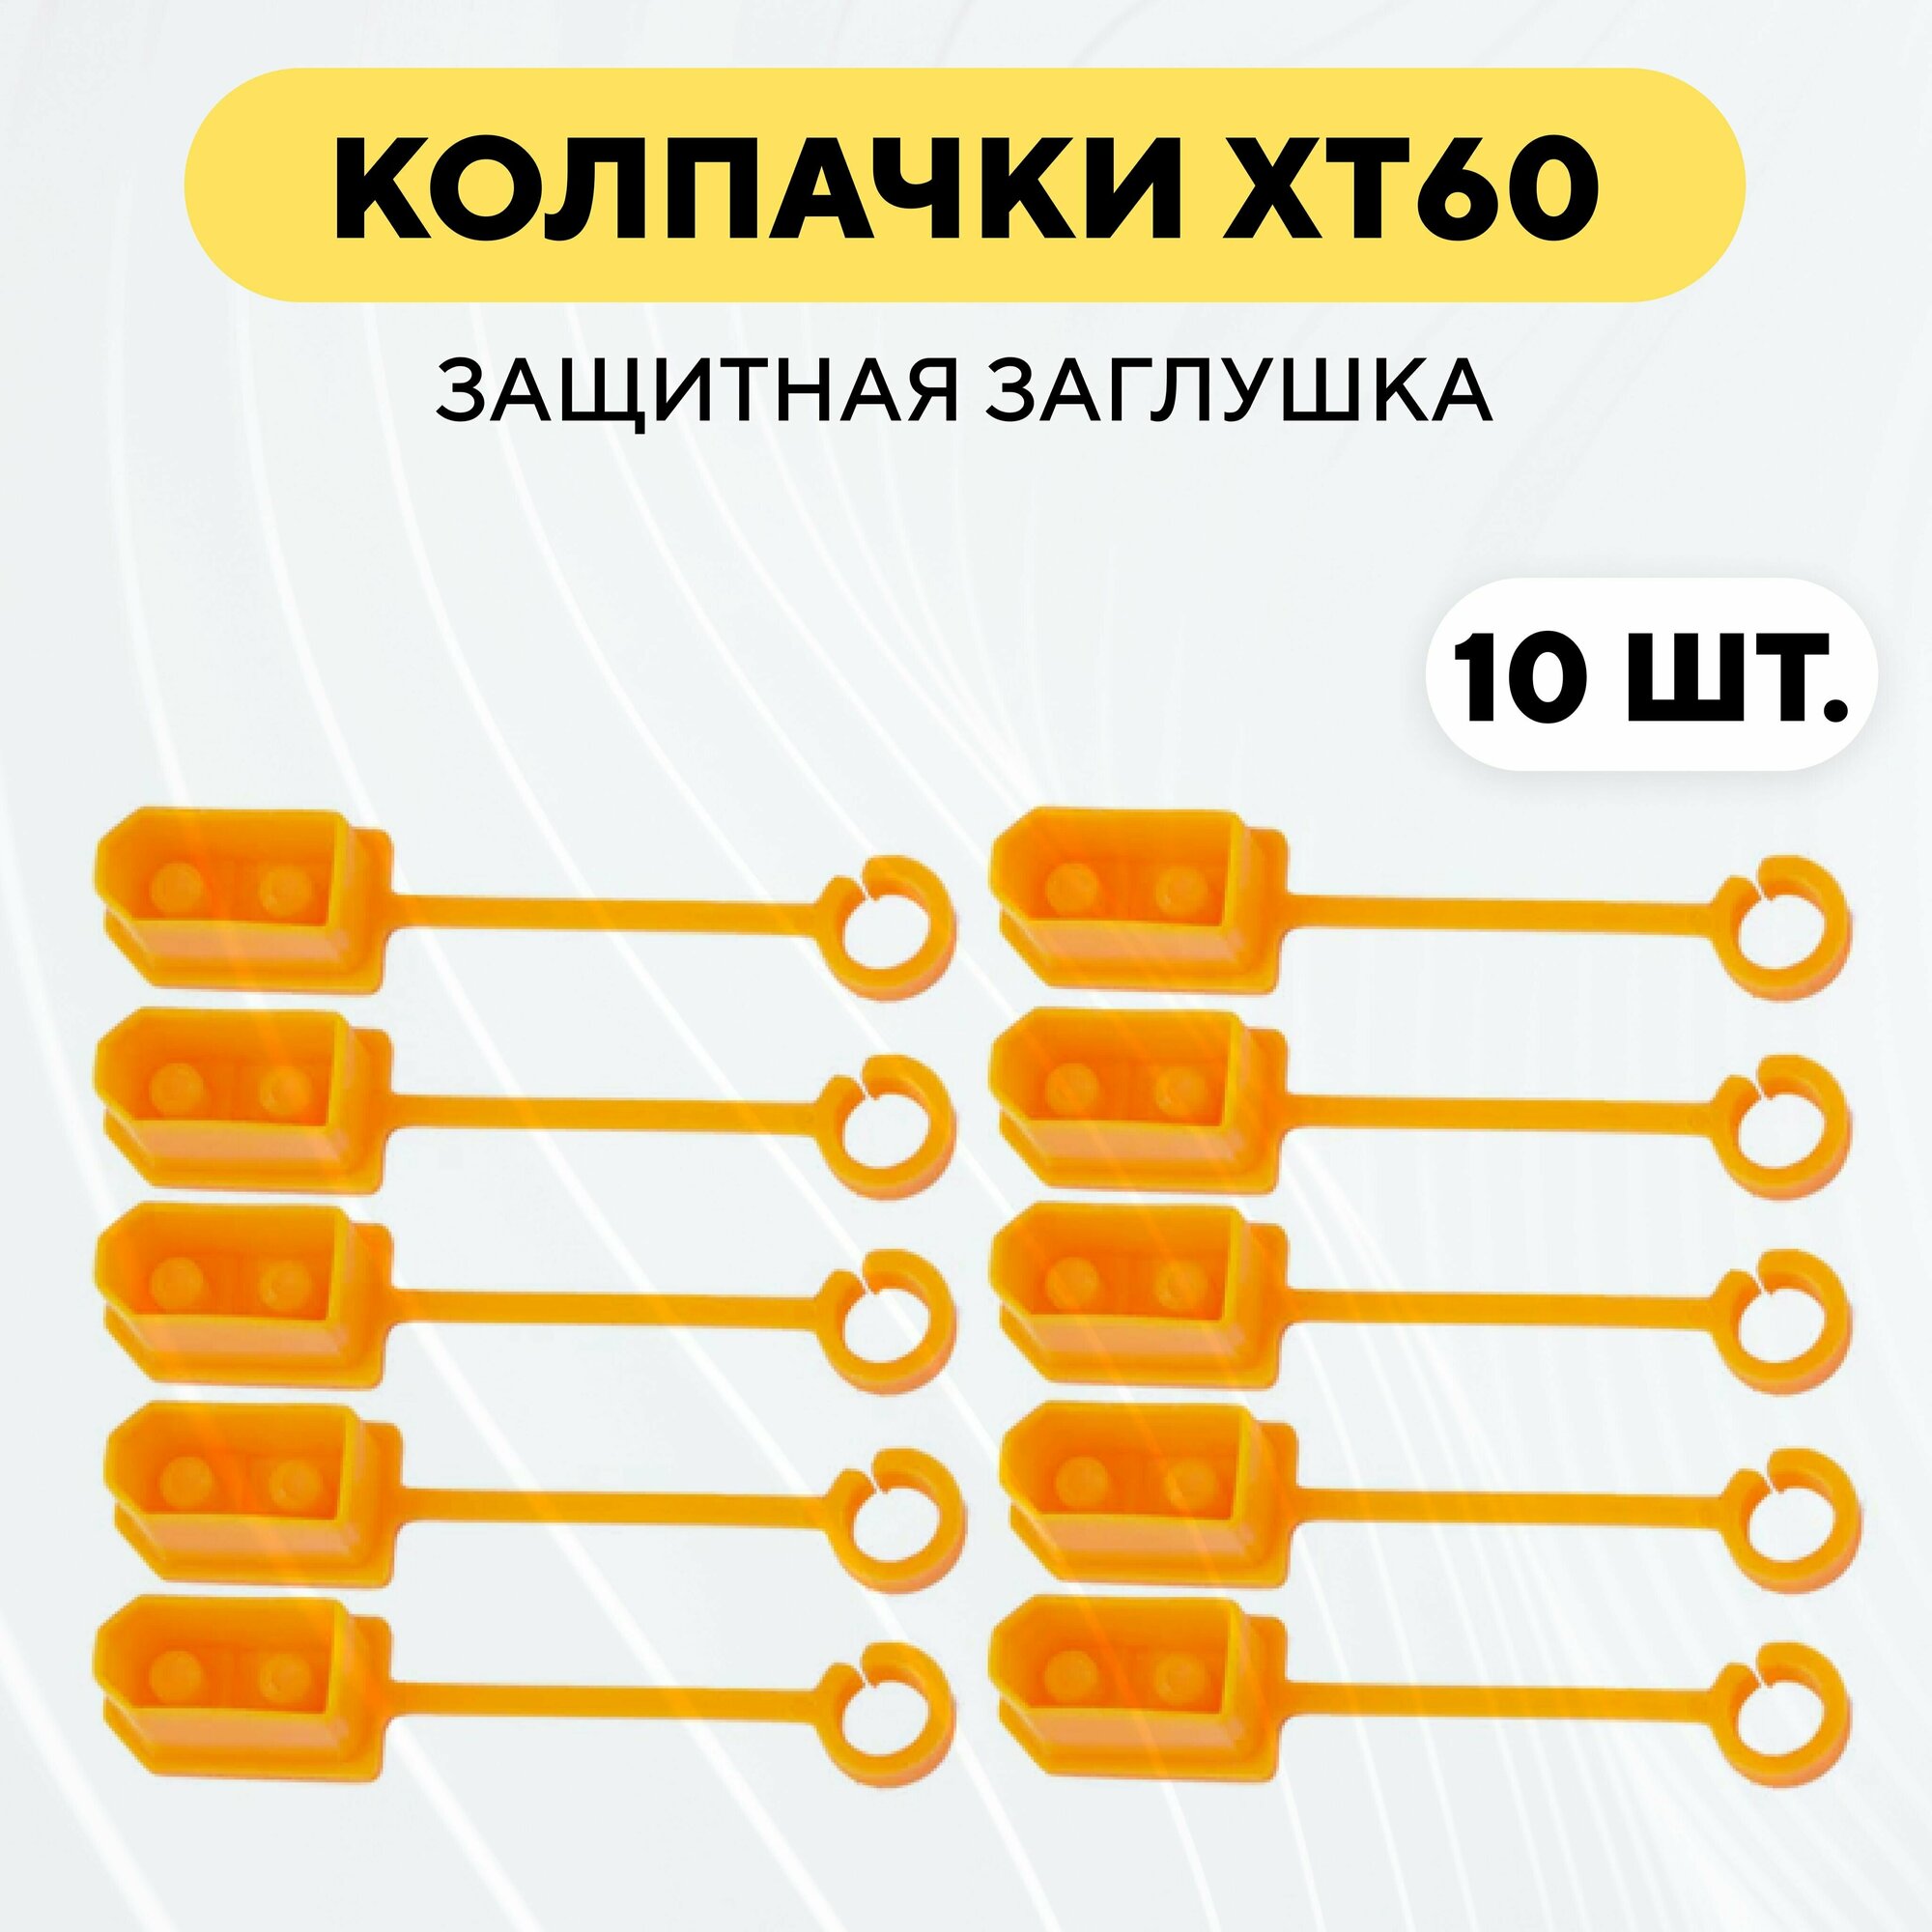 Колпачок для разъема XT60, защитная заглушка (10 штук, оранжевый)